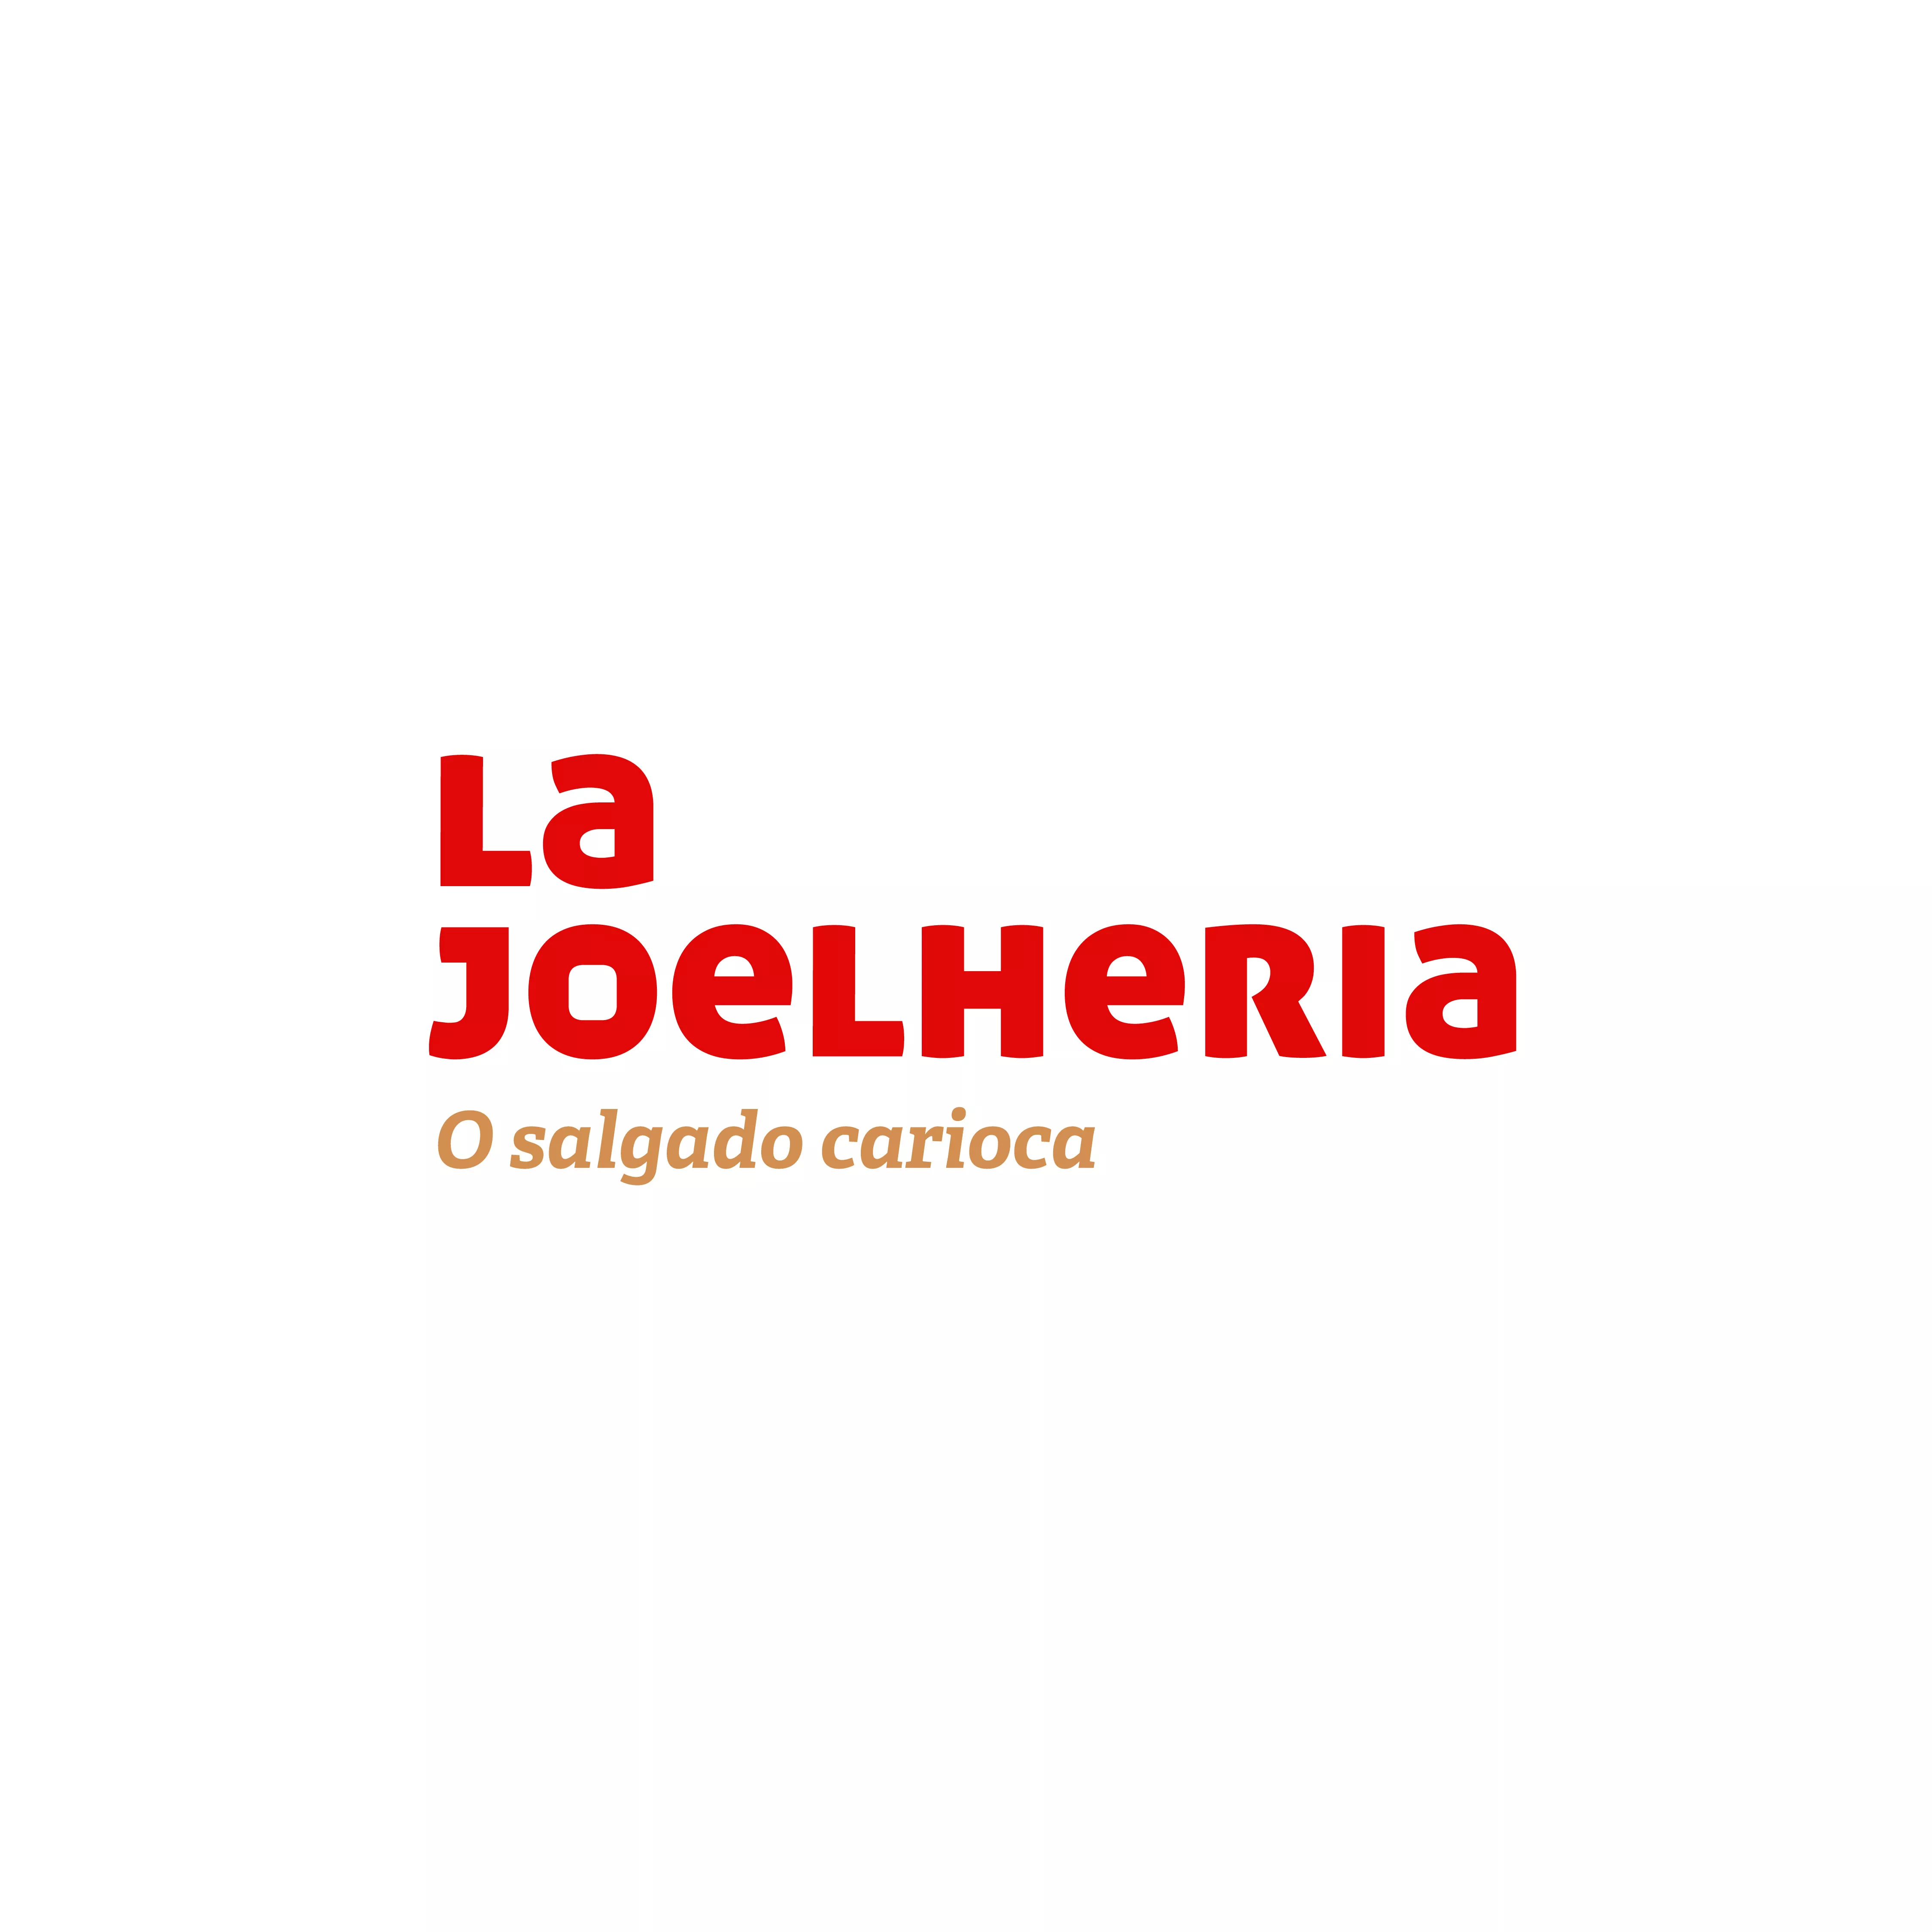 Logotipo_la_joelheria-01